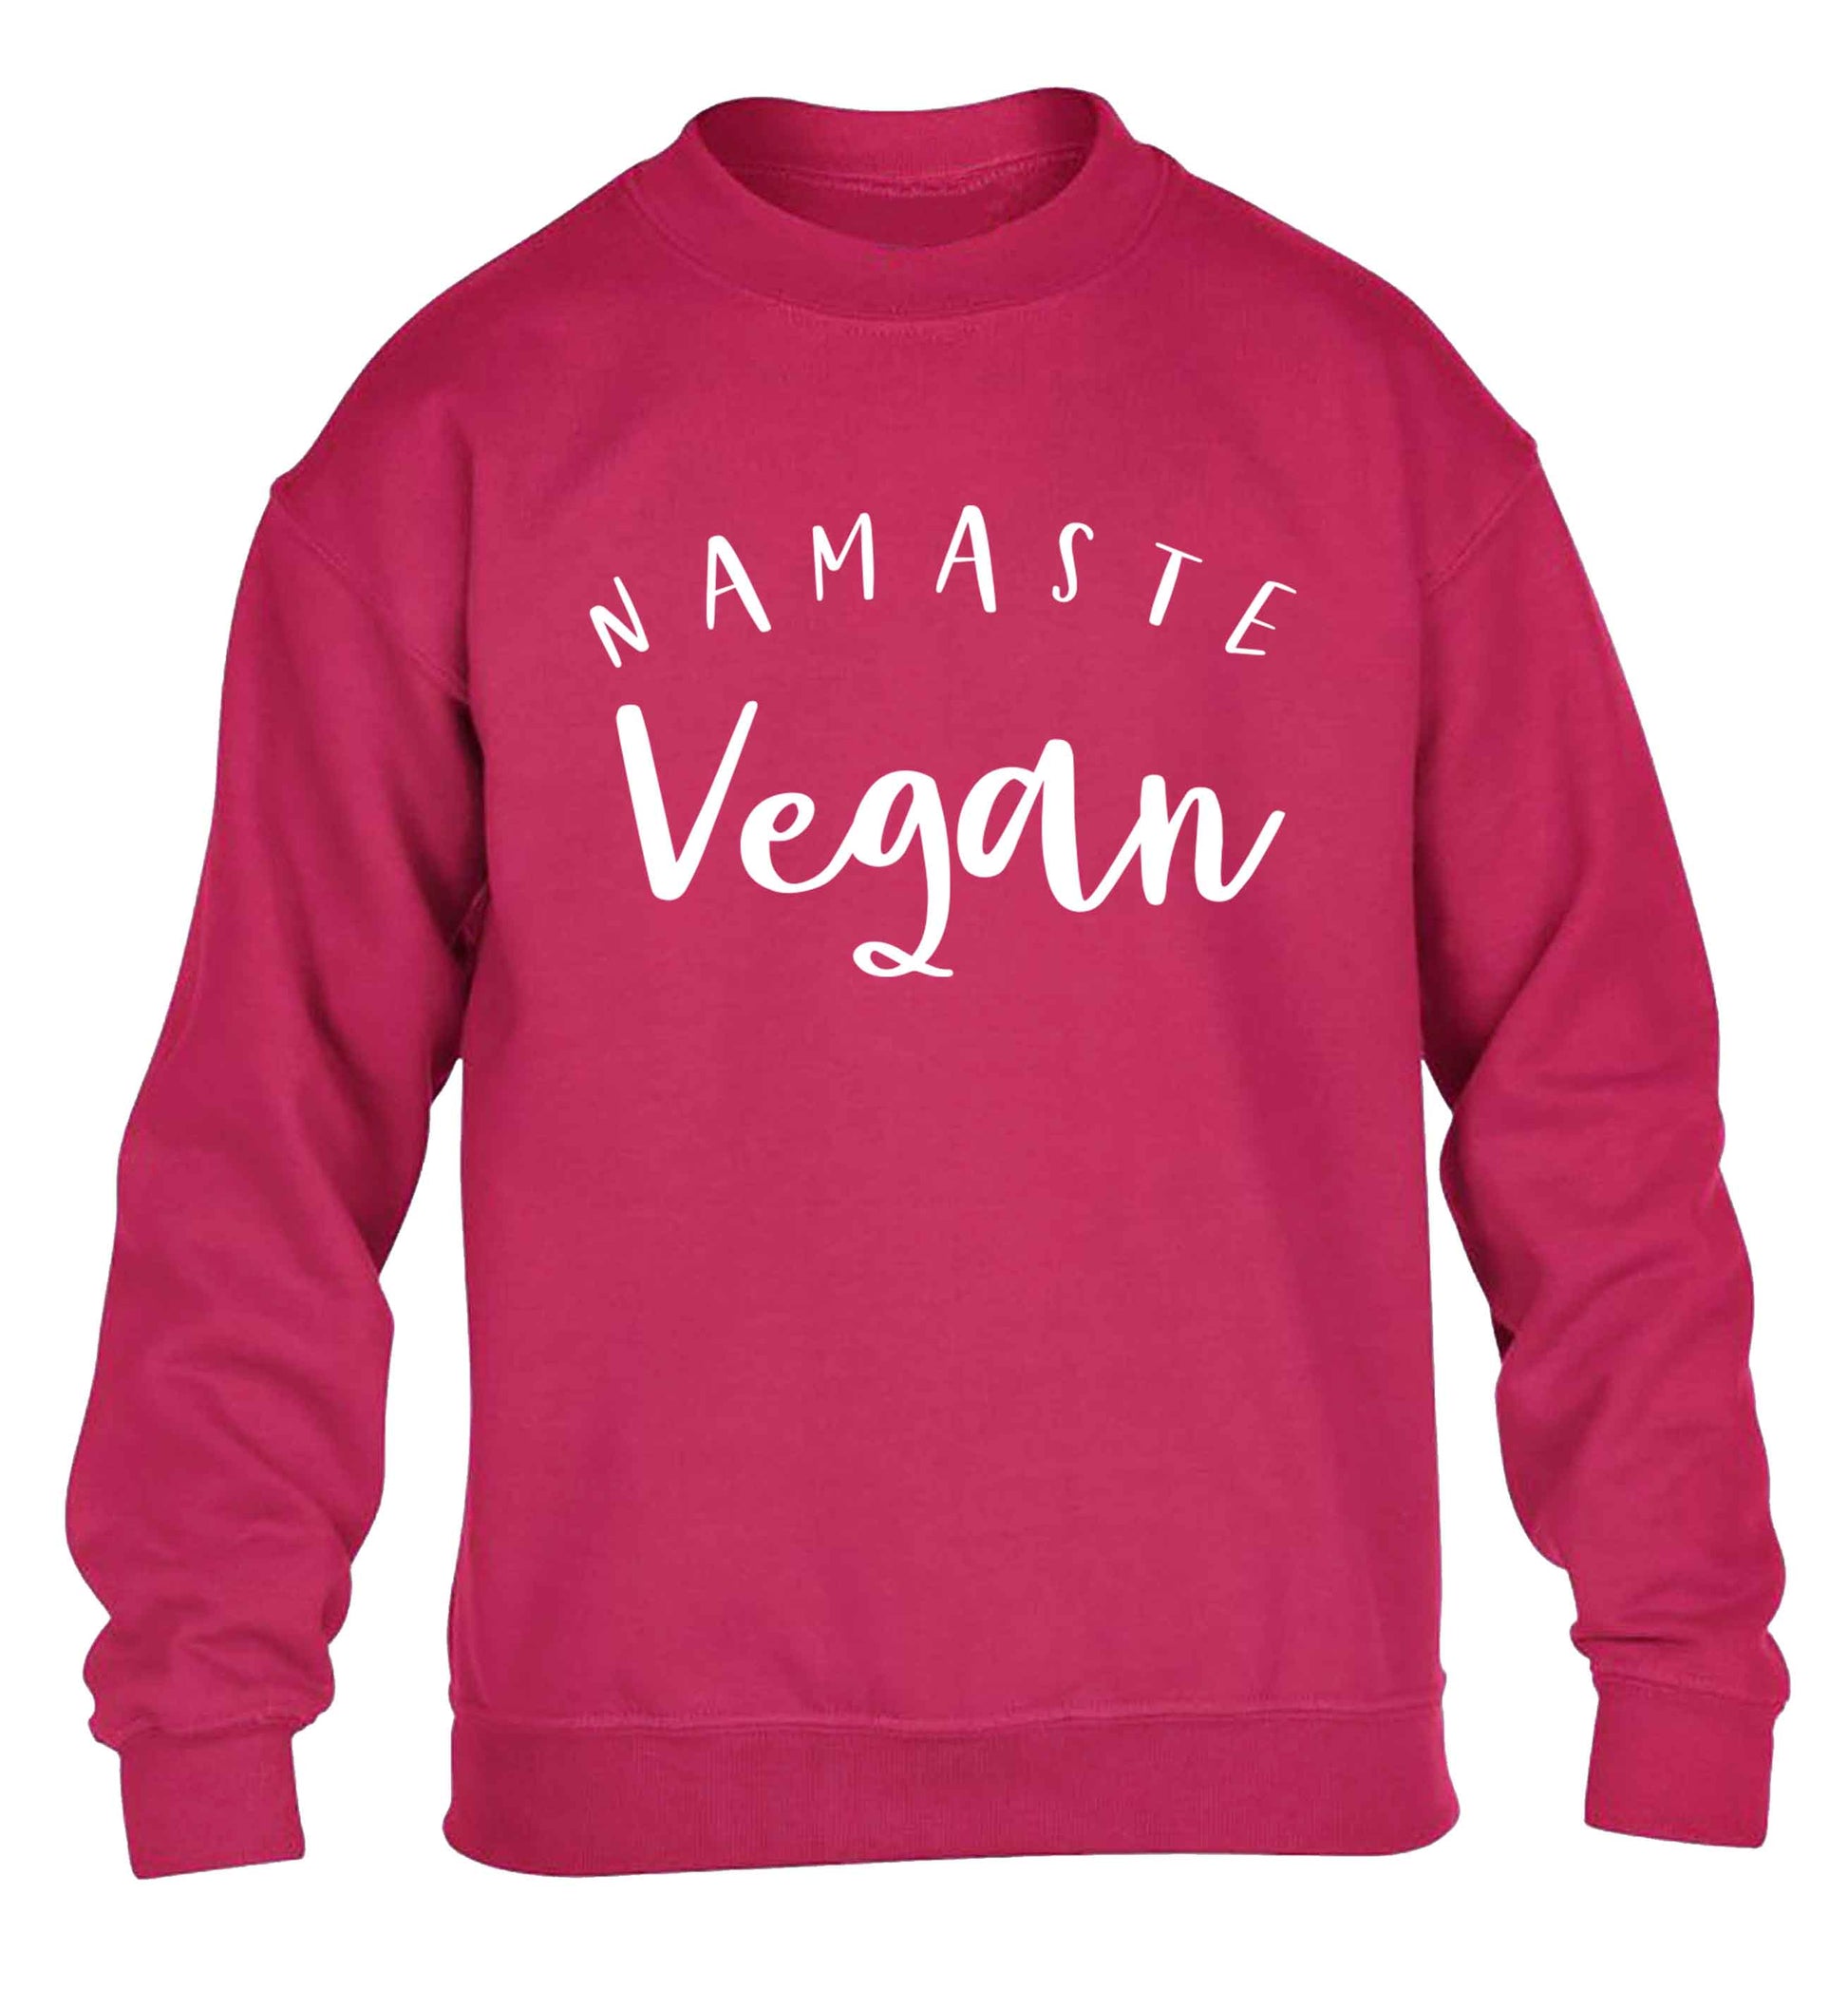 Namaste vegan children's pink sweater 12-13 Years